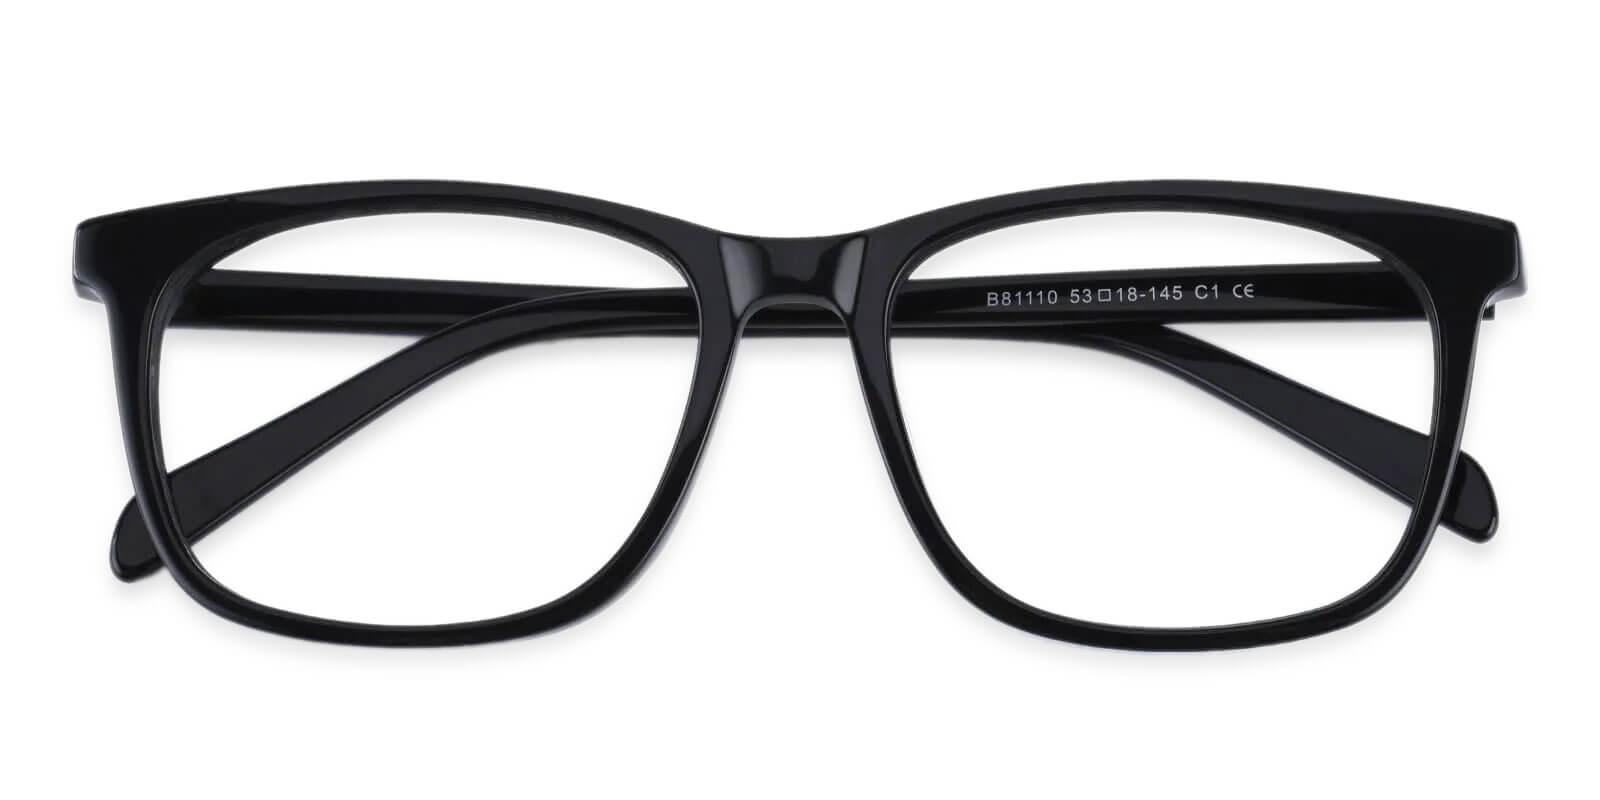 Plaza Black Acetate Eyeglasses , UniversalBridgeFit Frames from ABBE Glasses